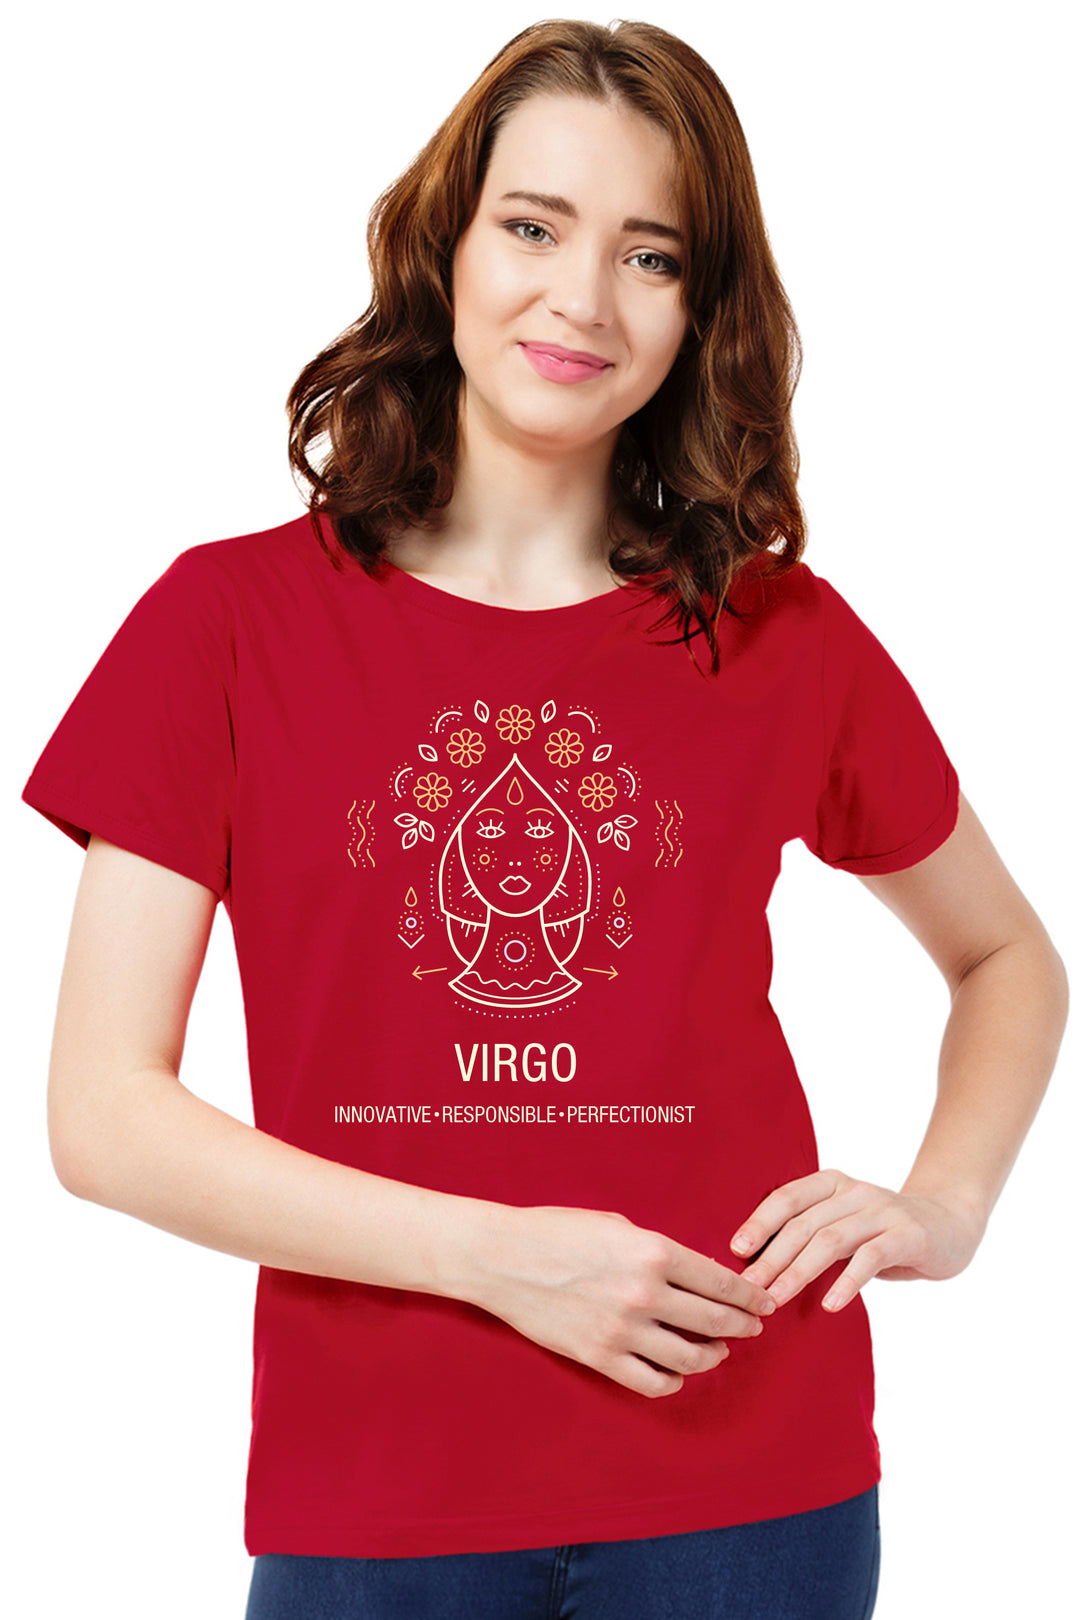 FflirtyGo Virgo Sign Printed T-Shirt - FflirtyGo